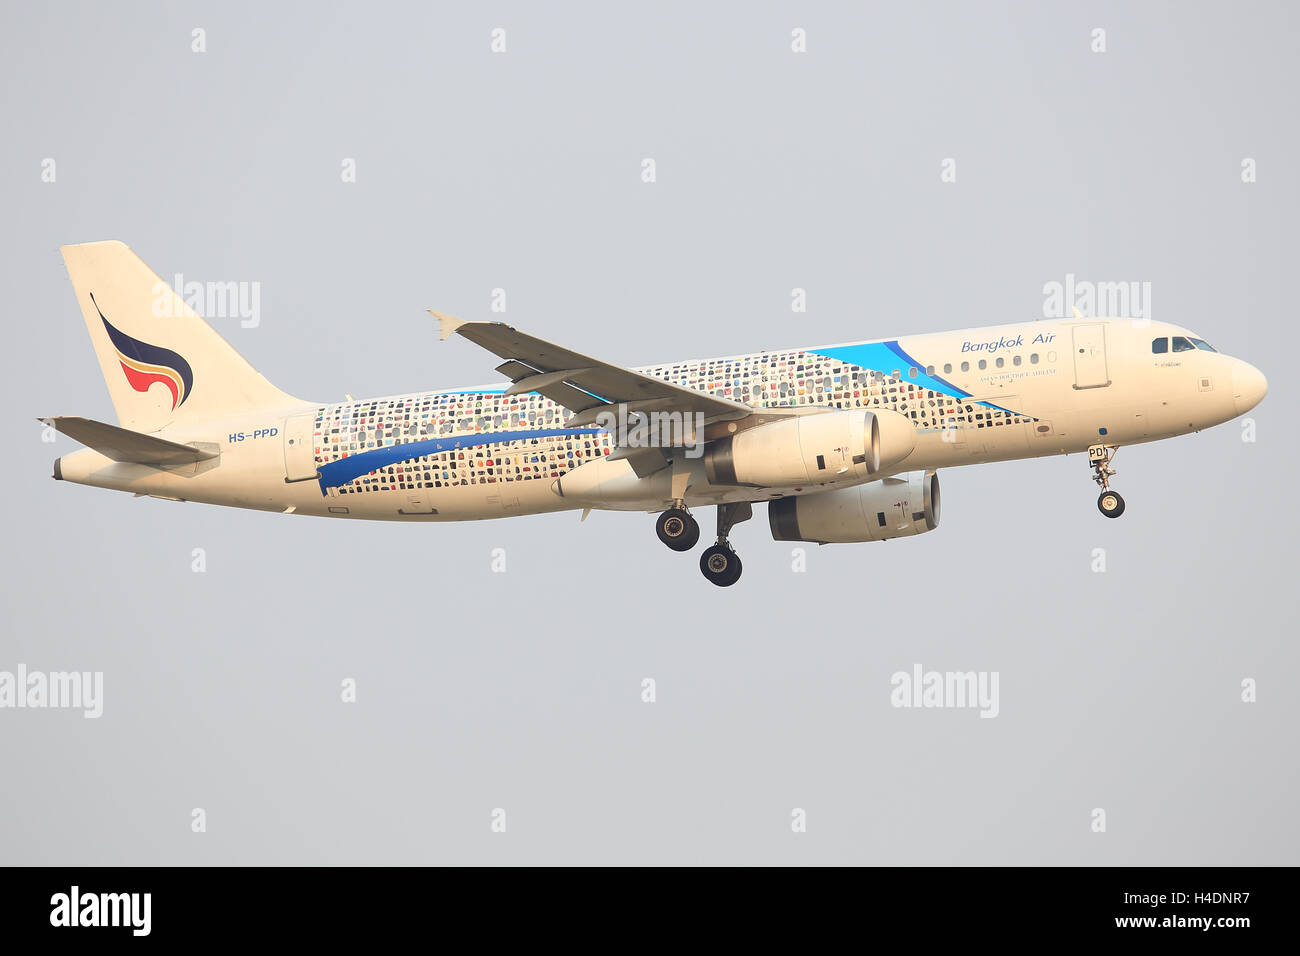 Bangkok/Thailand Februar 9, 2015: Airbus A320 von Bangkok Air Hs-PPD landet auf dem Flughafen von Bangkok. Stockfoto